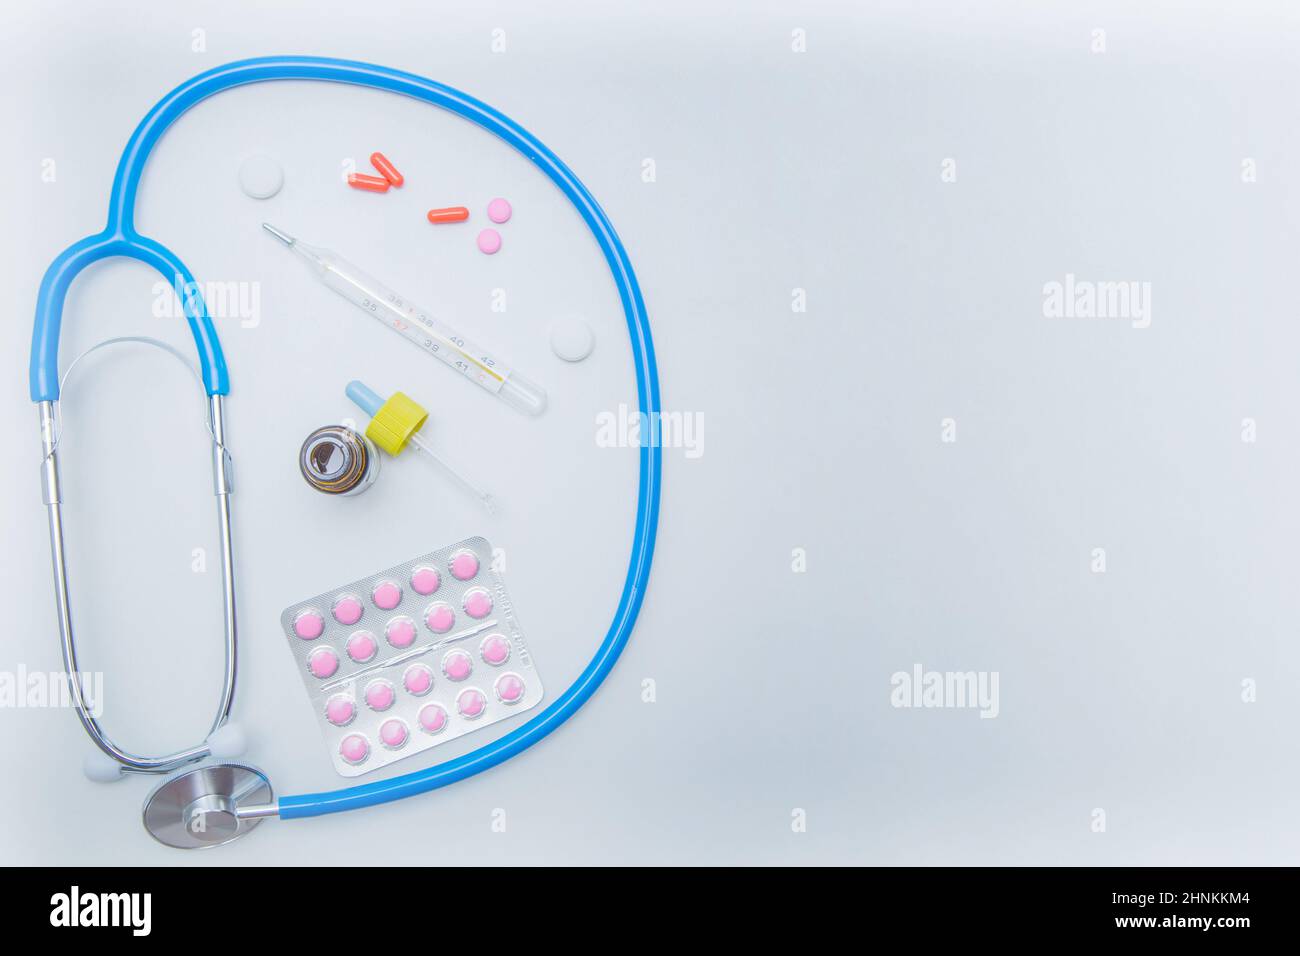 Das Stethoskop liegt auf einem weißen Hintergrund in einem Kreis, darin befindet sich ein Thermometer, Medikamente und Tropfen aus einer laufenden Nase. Stockfoto